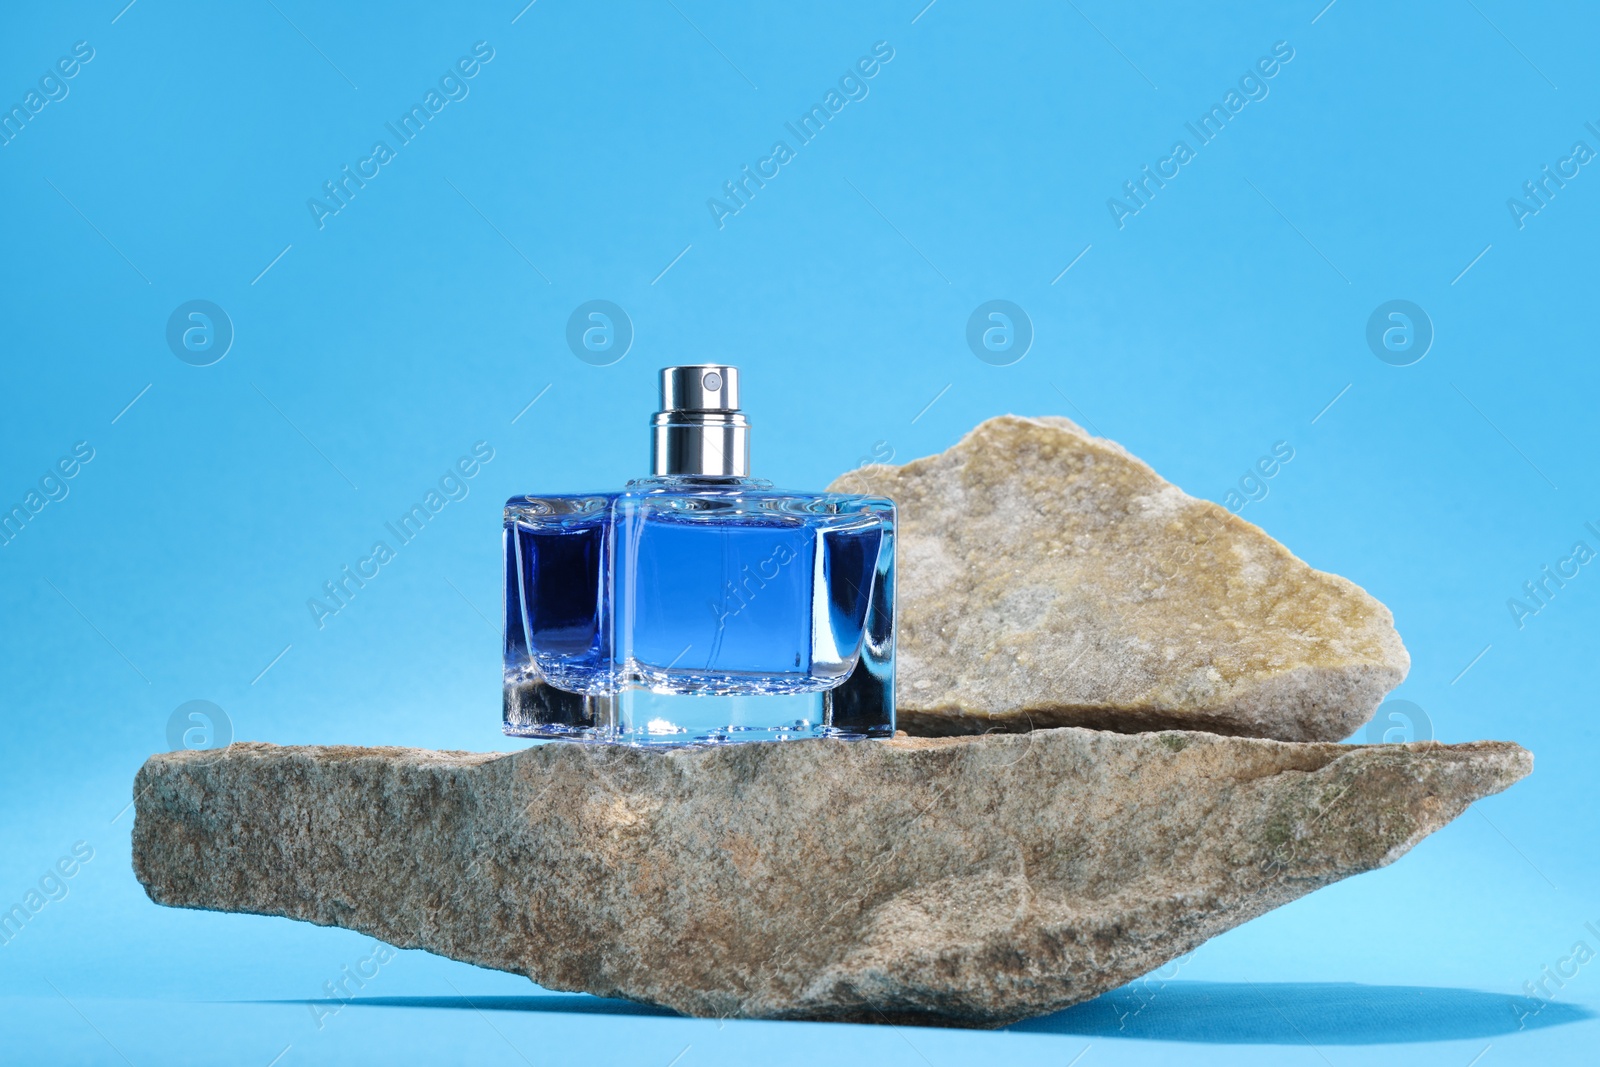 Photo of Stylish presentation of luxury men`s perfume on stones against light blue background